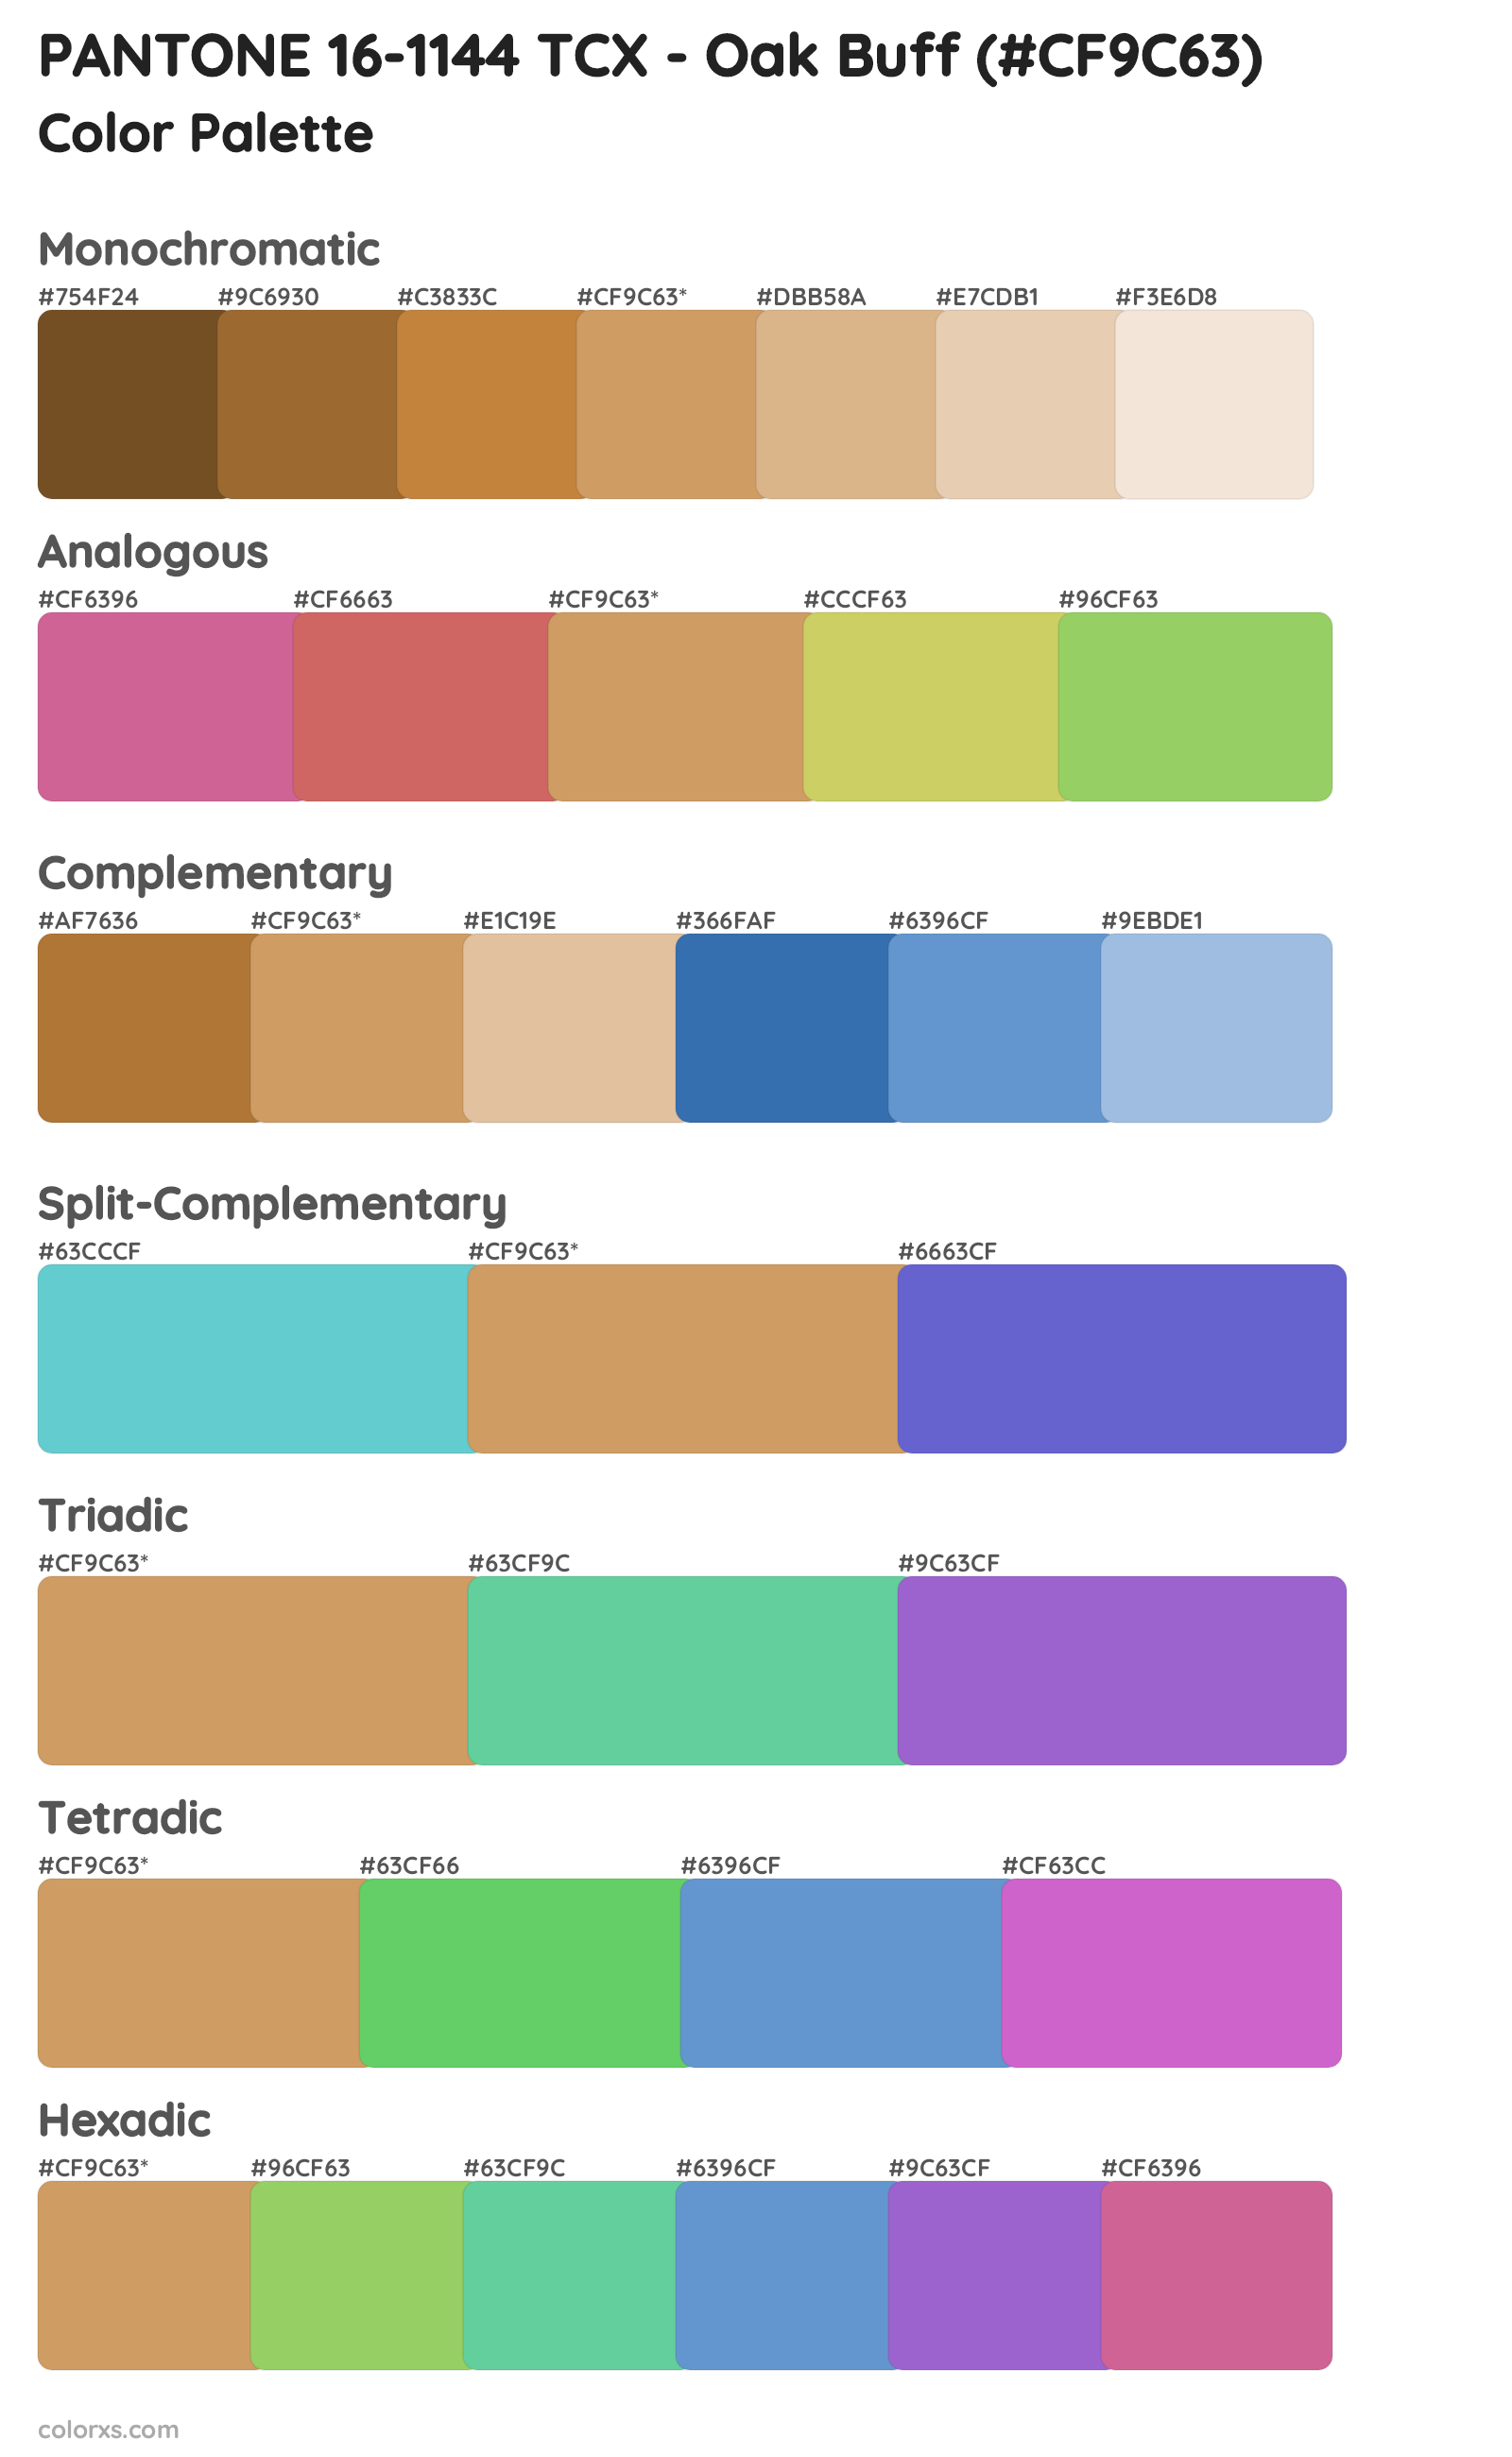 PANTONE 16-1144 TCX - Oak Buff Color Scheme Palettes